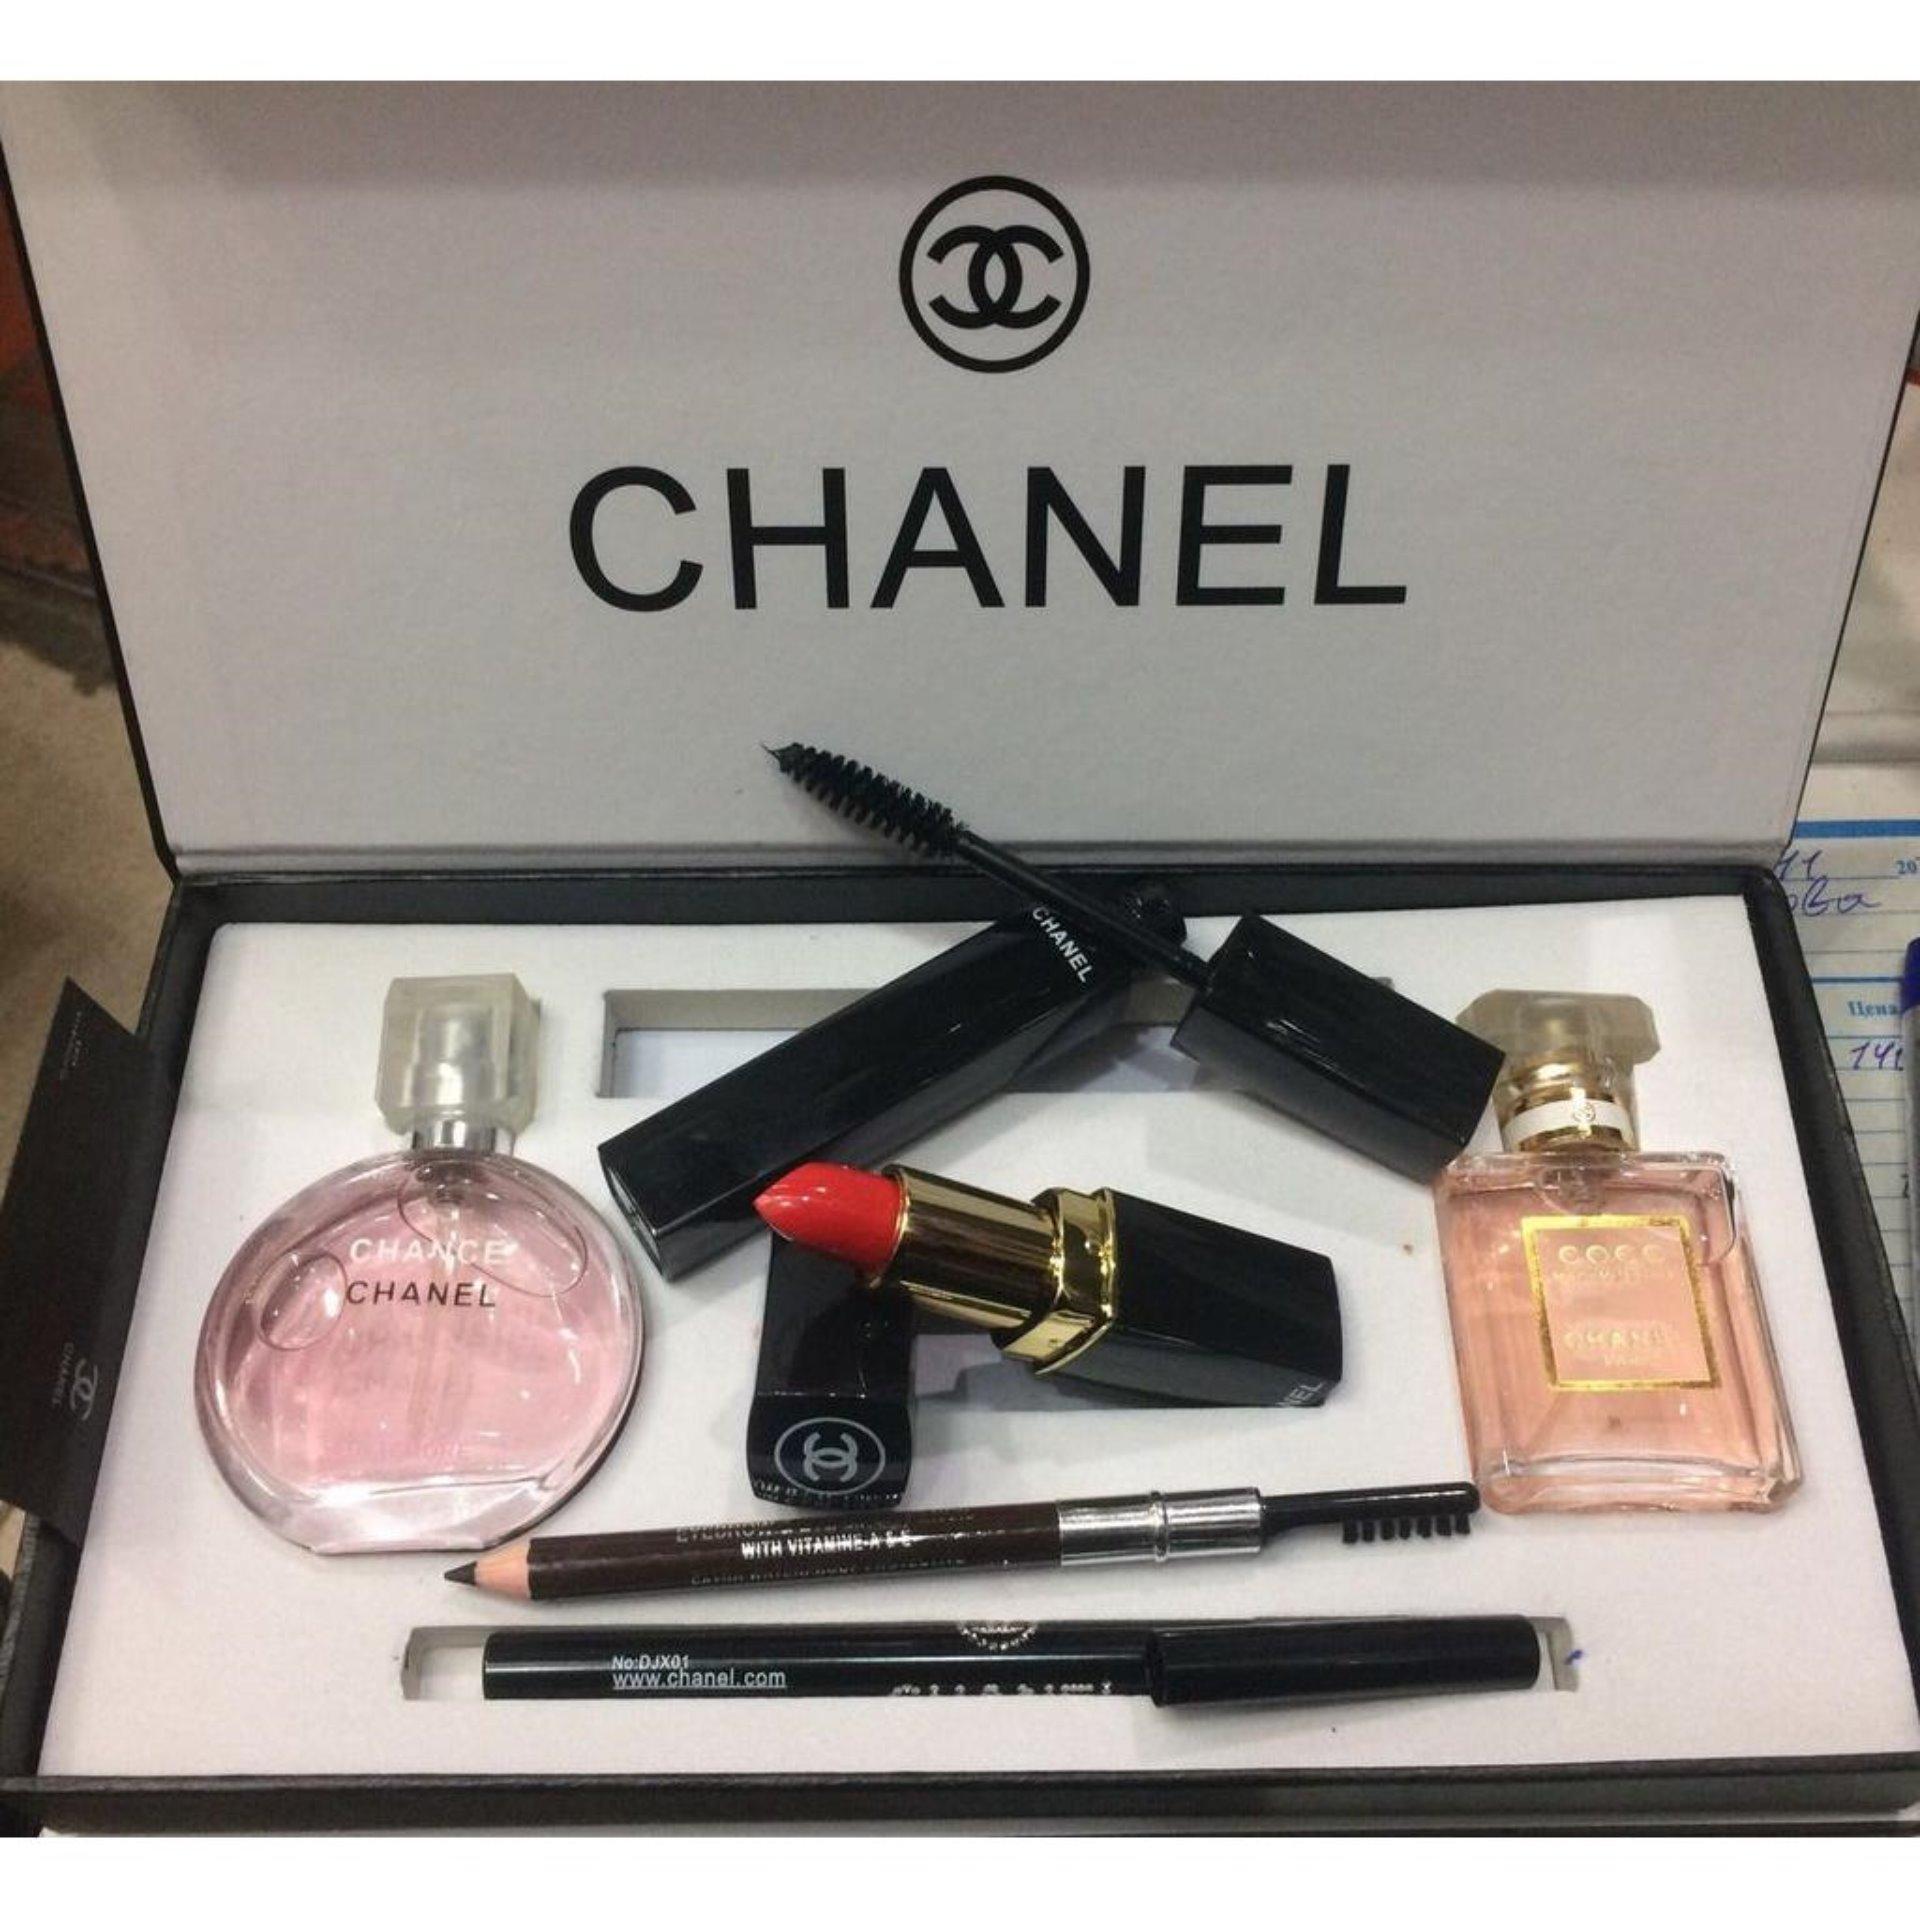 Bộ trang điểm Chanel 9 món  SET CHANEL 9 MÓN CÓ HÀNG  Mua 1 bộ  đầy đủ 9 món trang điểm cần thiết của mọi cô gái   Giá 